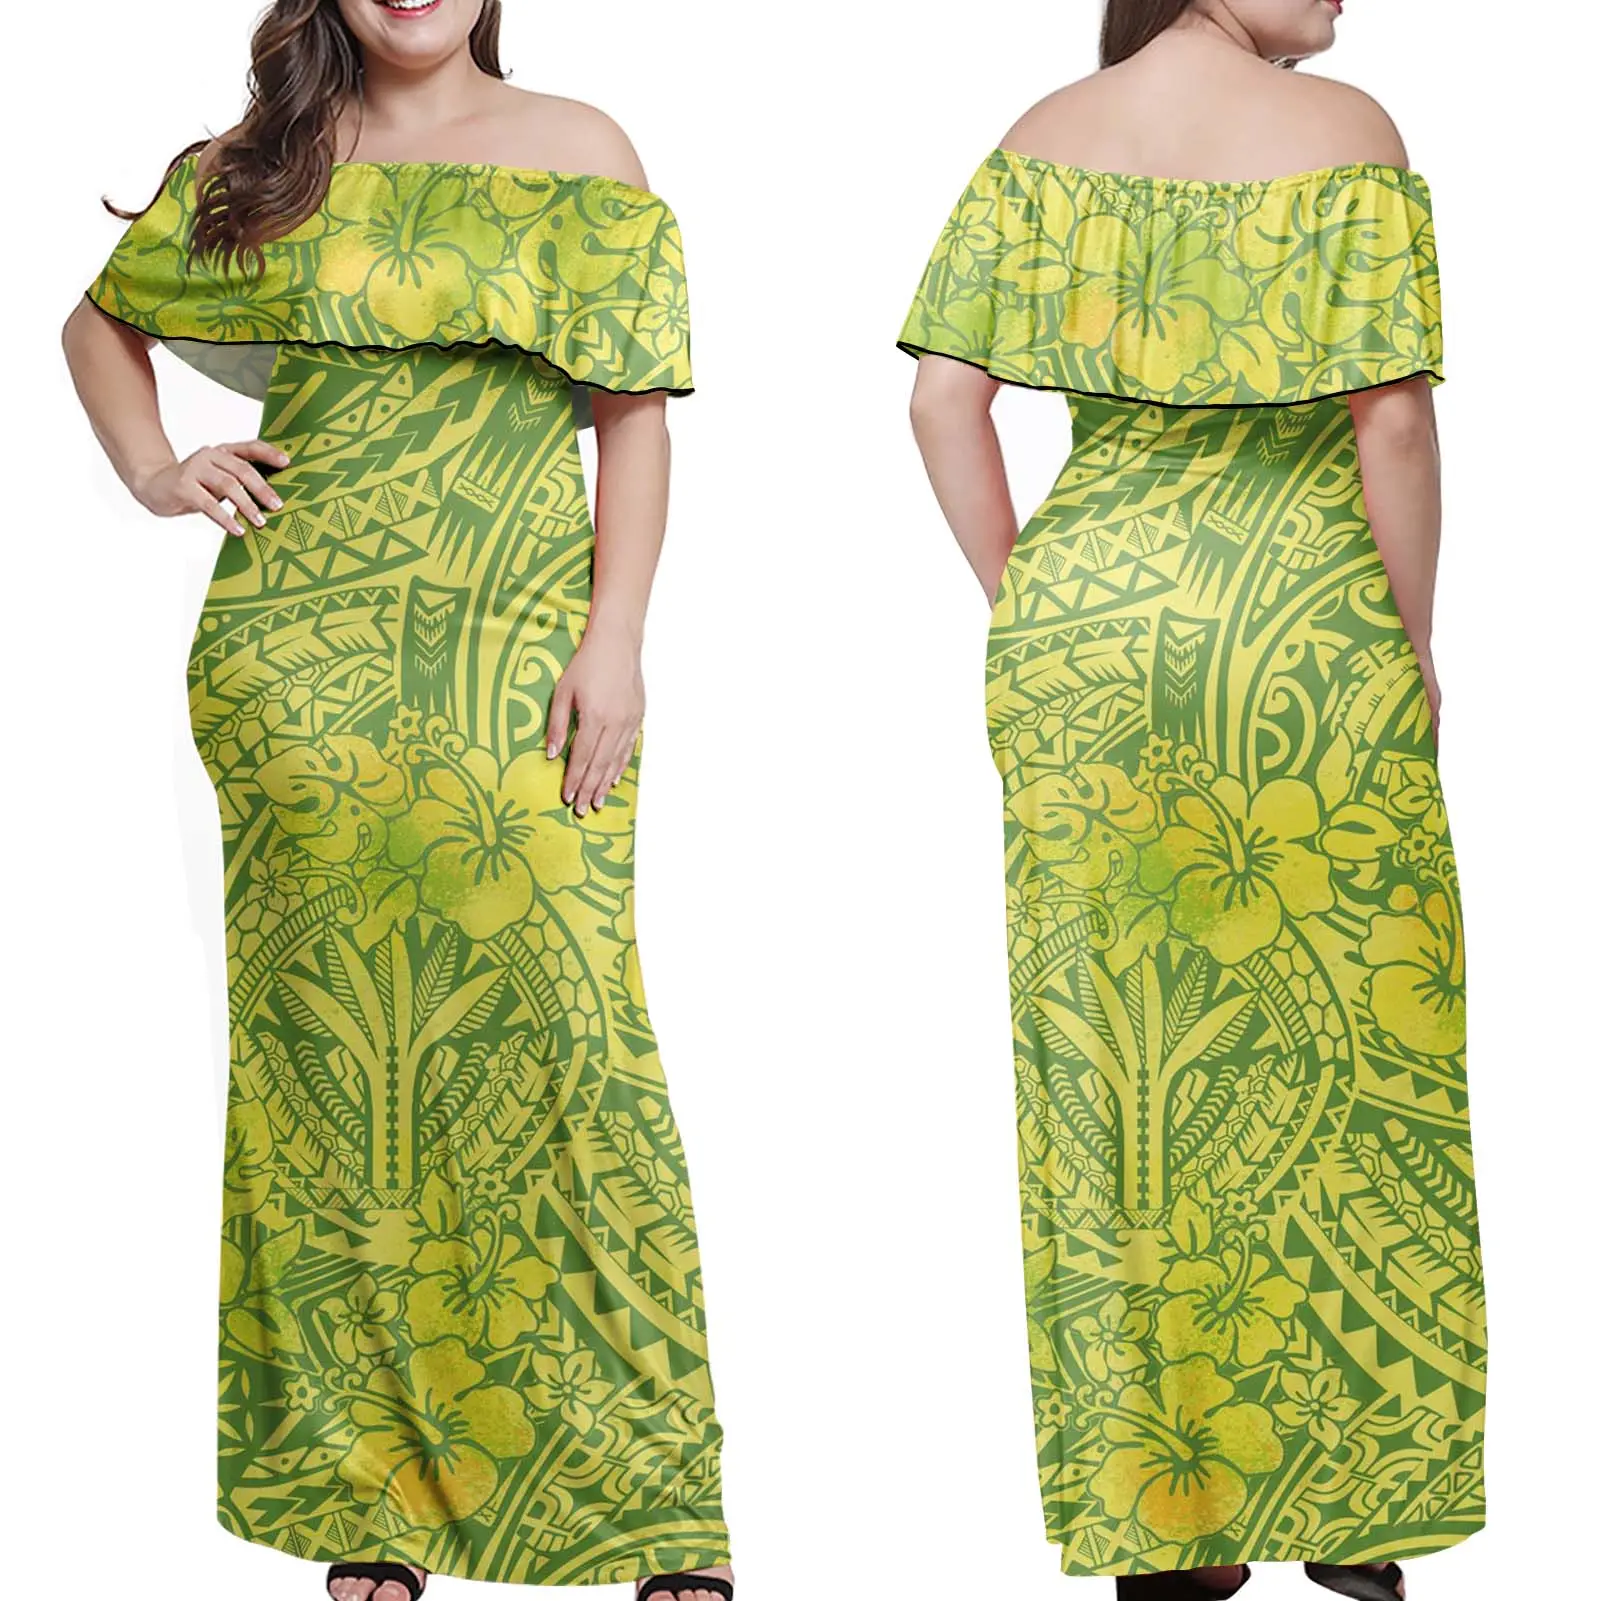 تصل إلى 7XL ساموا البولينيزية القبلية المطبوعة السيدات فساتين ملابس جاهزة للنساء عارضة فستان صيني الملابس التقليدية البائعين اللباس